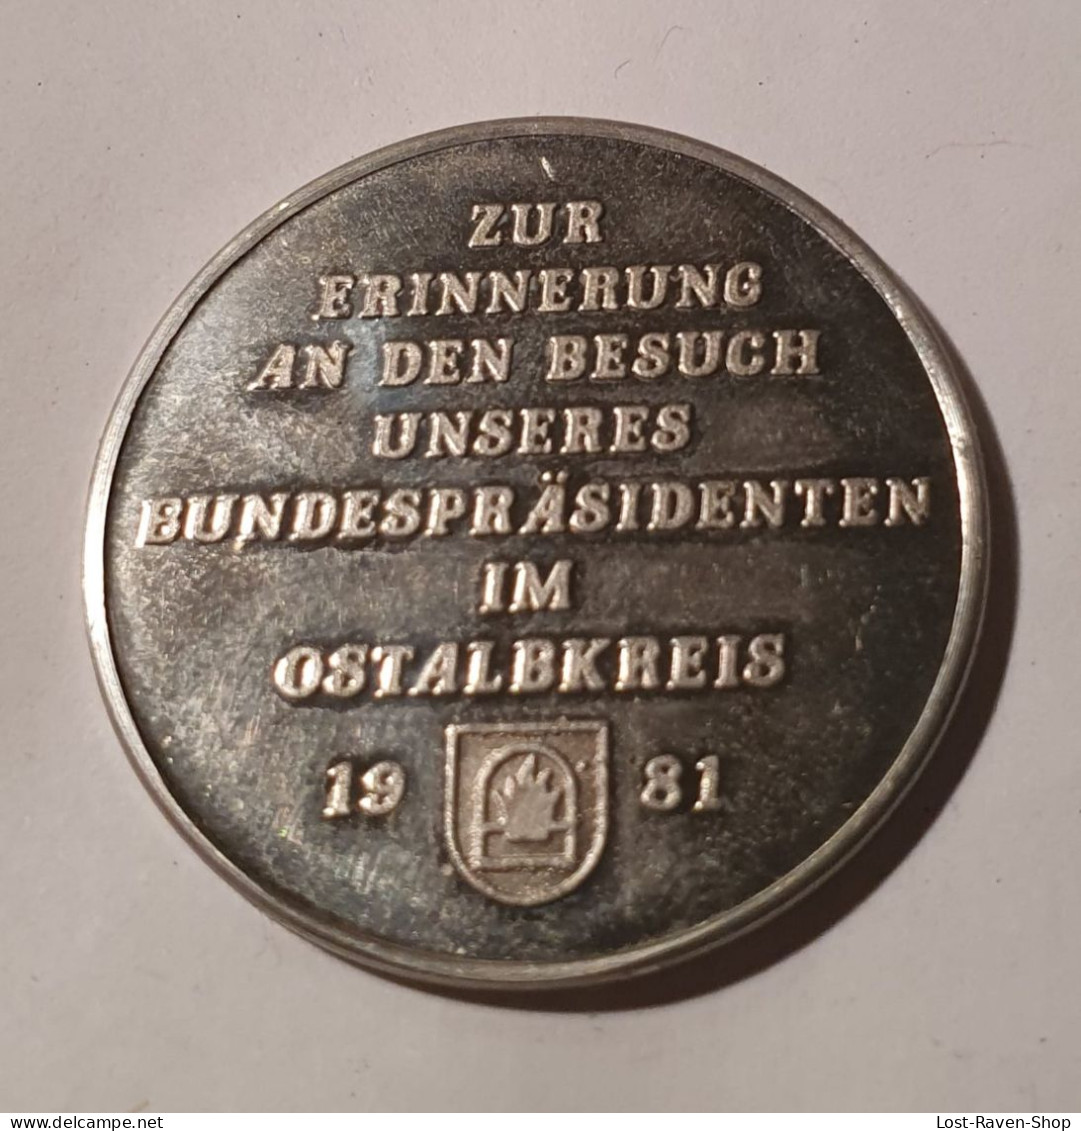 Zur Erinnerung An Den Besuch Unseres Bundespräsidenten Im Ostalbkreis 1981 - Karl Carstens - Pièces écrasées (Elongated Coins)